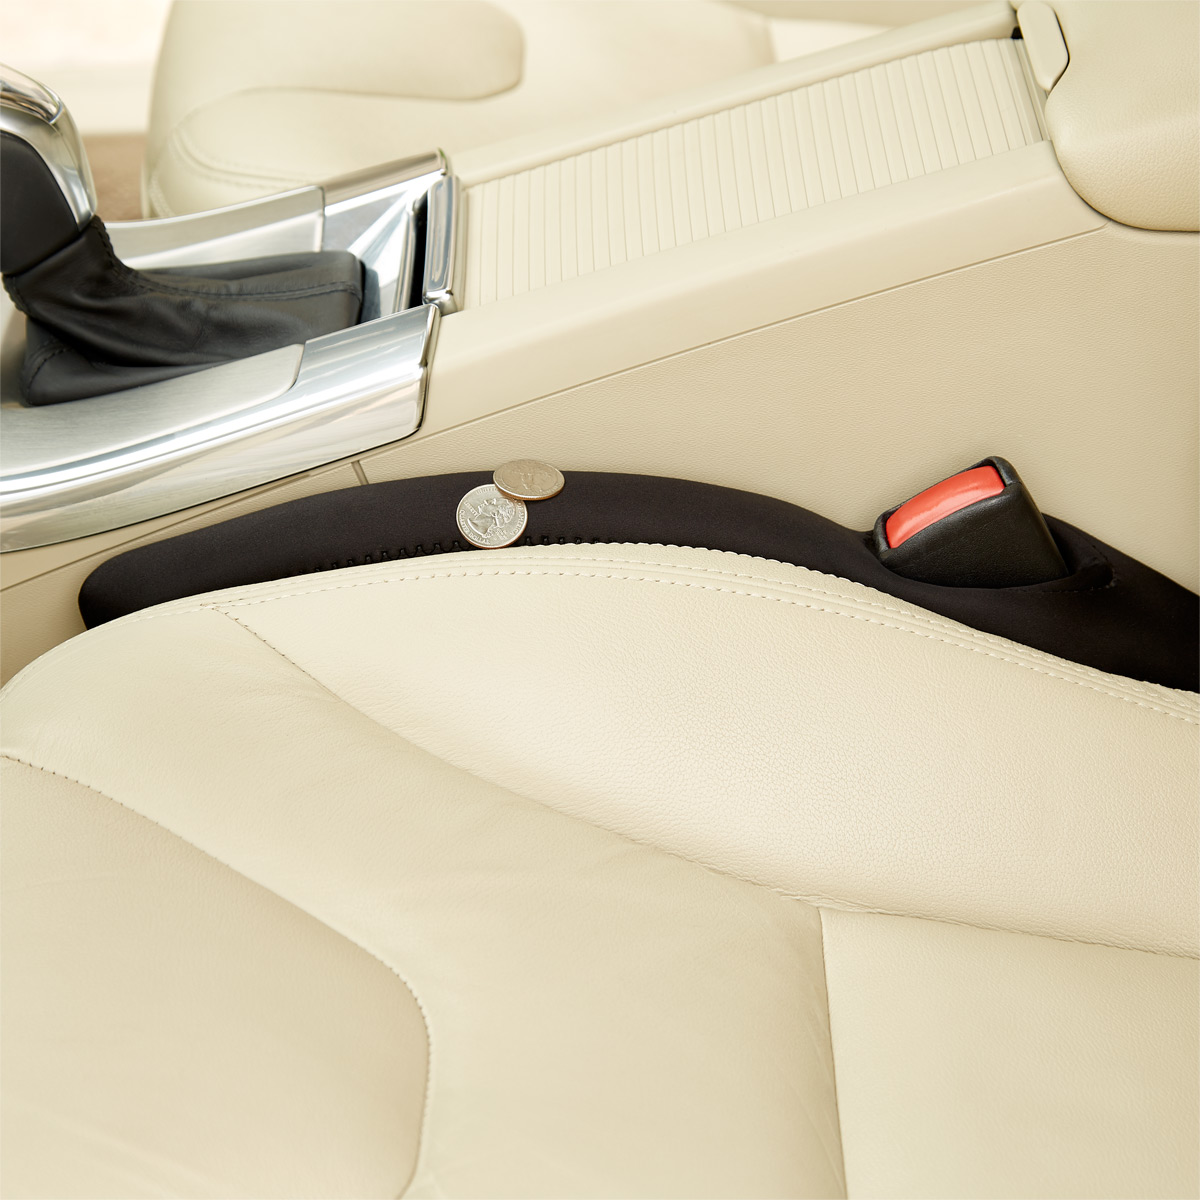 Car seat gap filler AntiDrop - 2 pieces - Closes the gap between